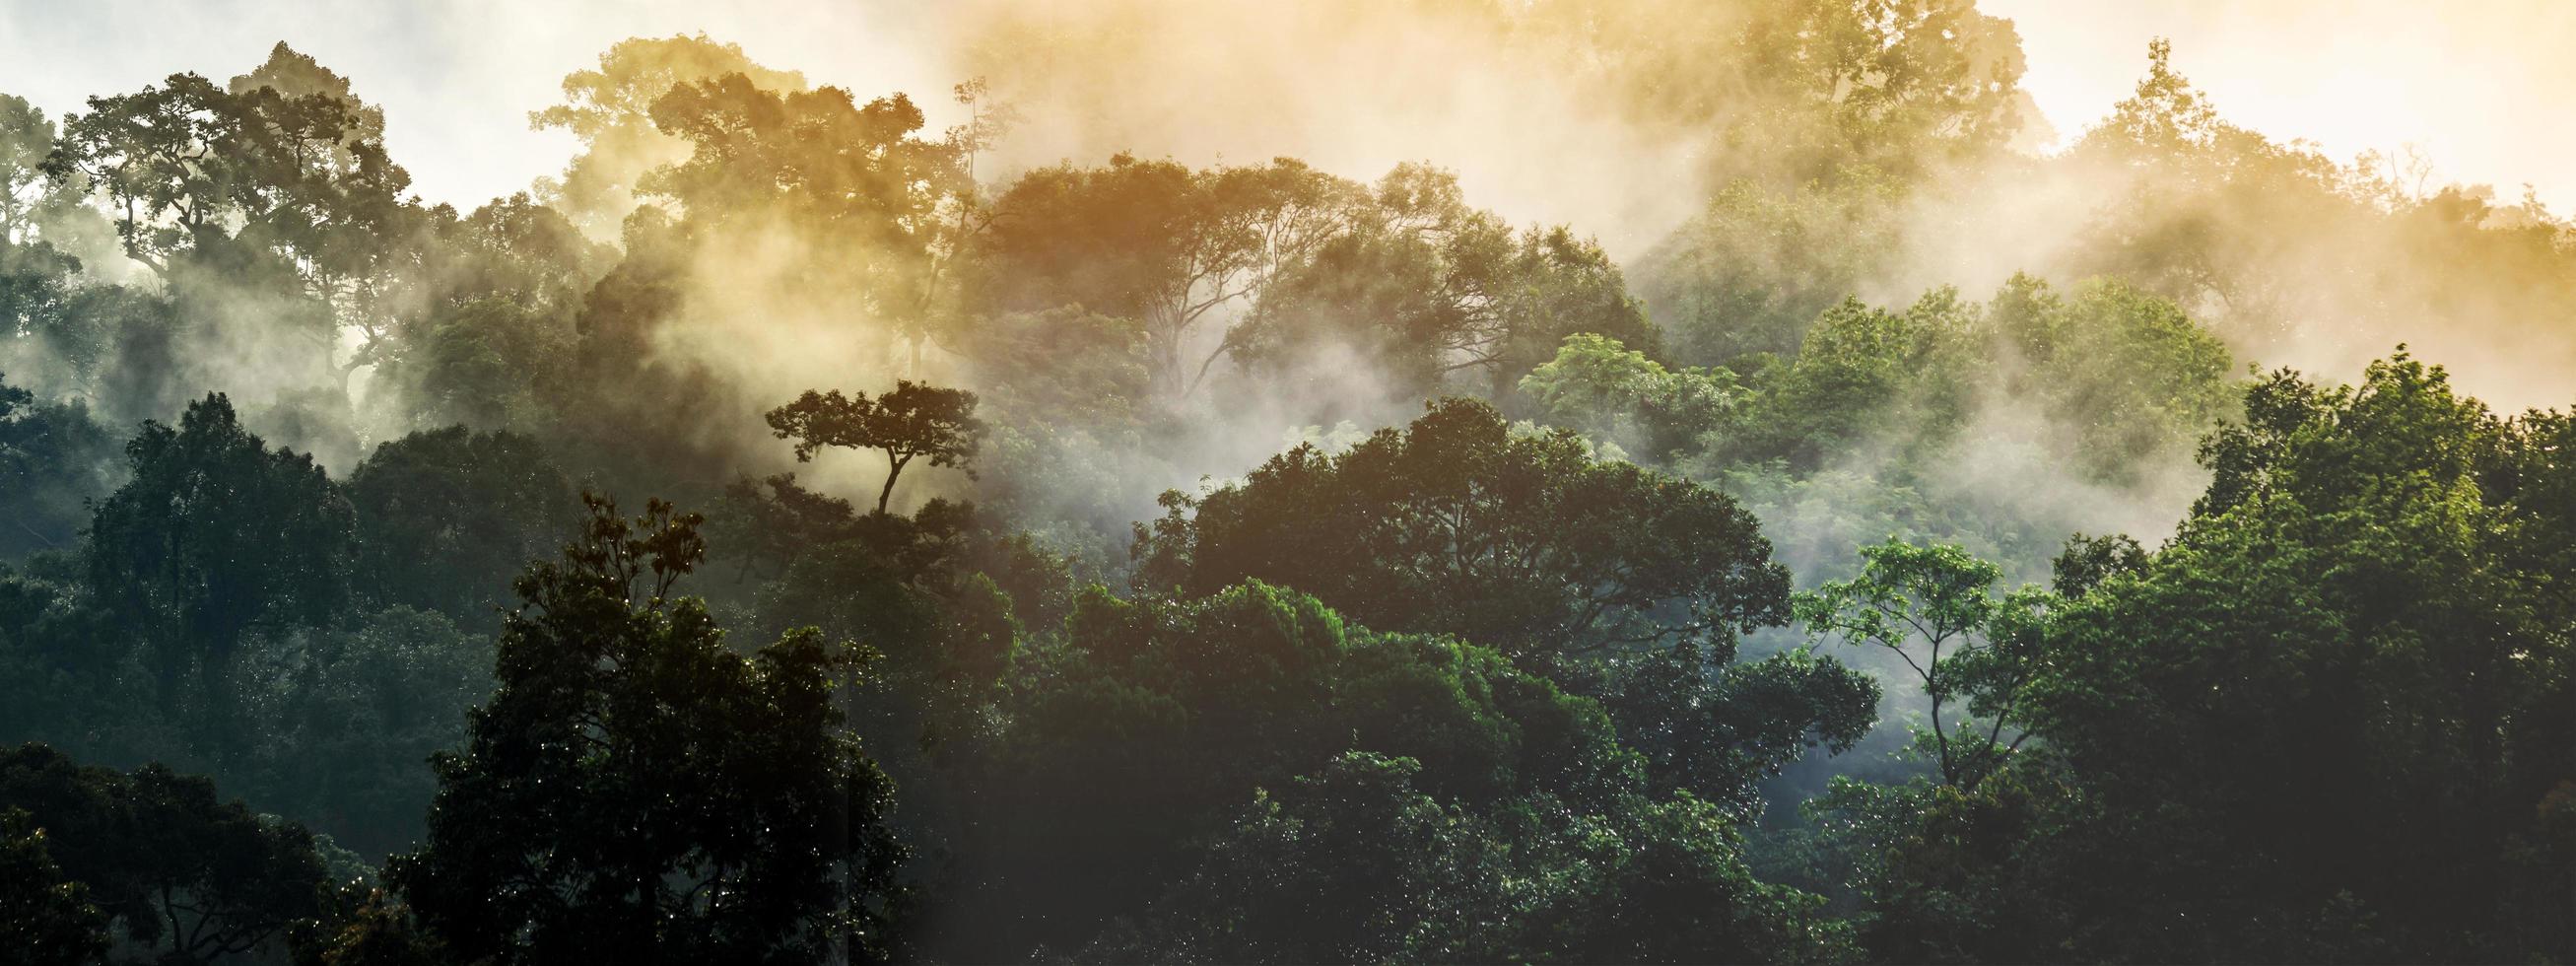 panoramabannerbakgrund av tropisk skoglandskapsscen för användning i konceptet miljöekologi och hållbar energi eller jordens dag, natursköna vilda träslag som tapeter för spa och turism foto